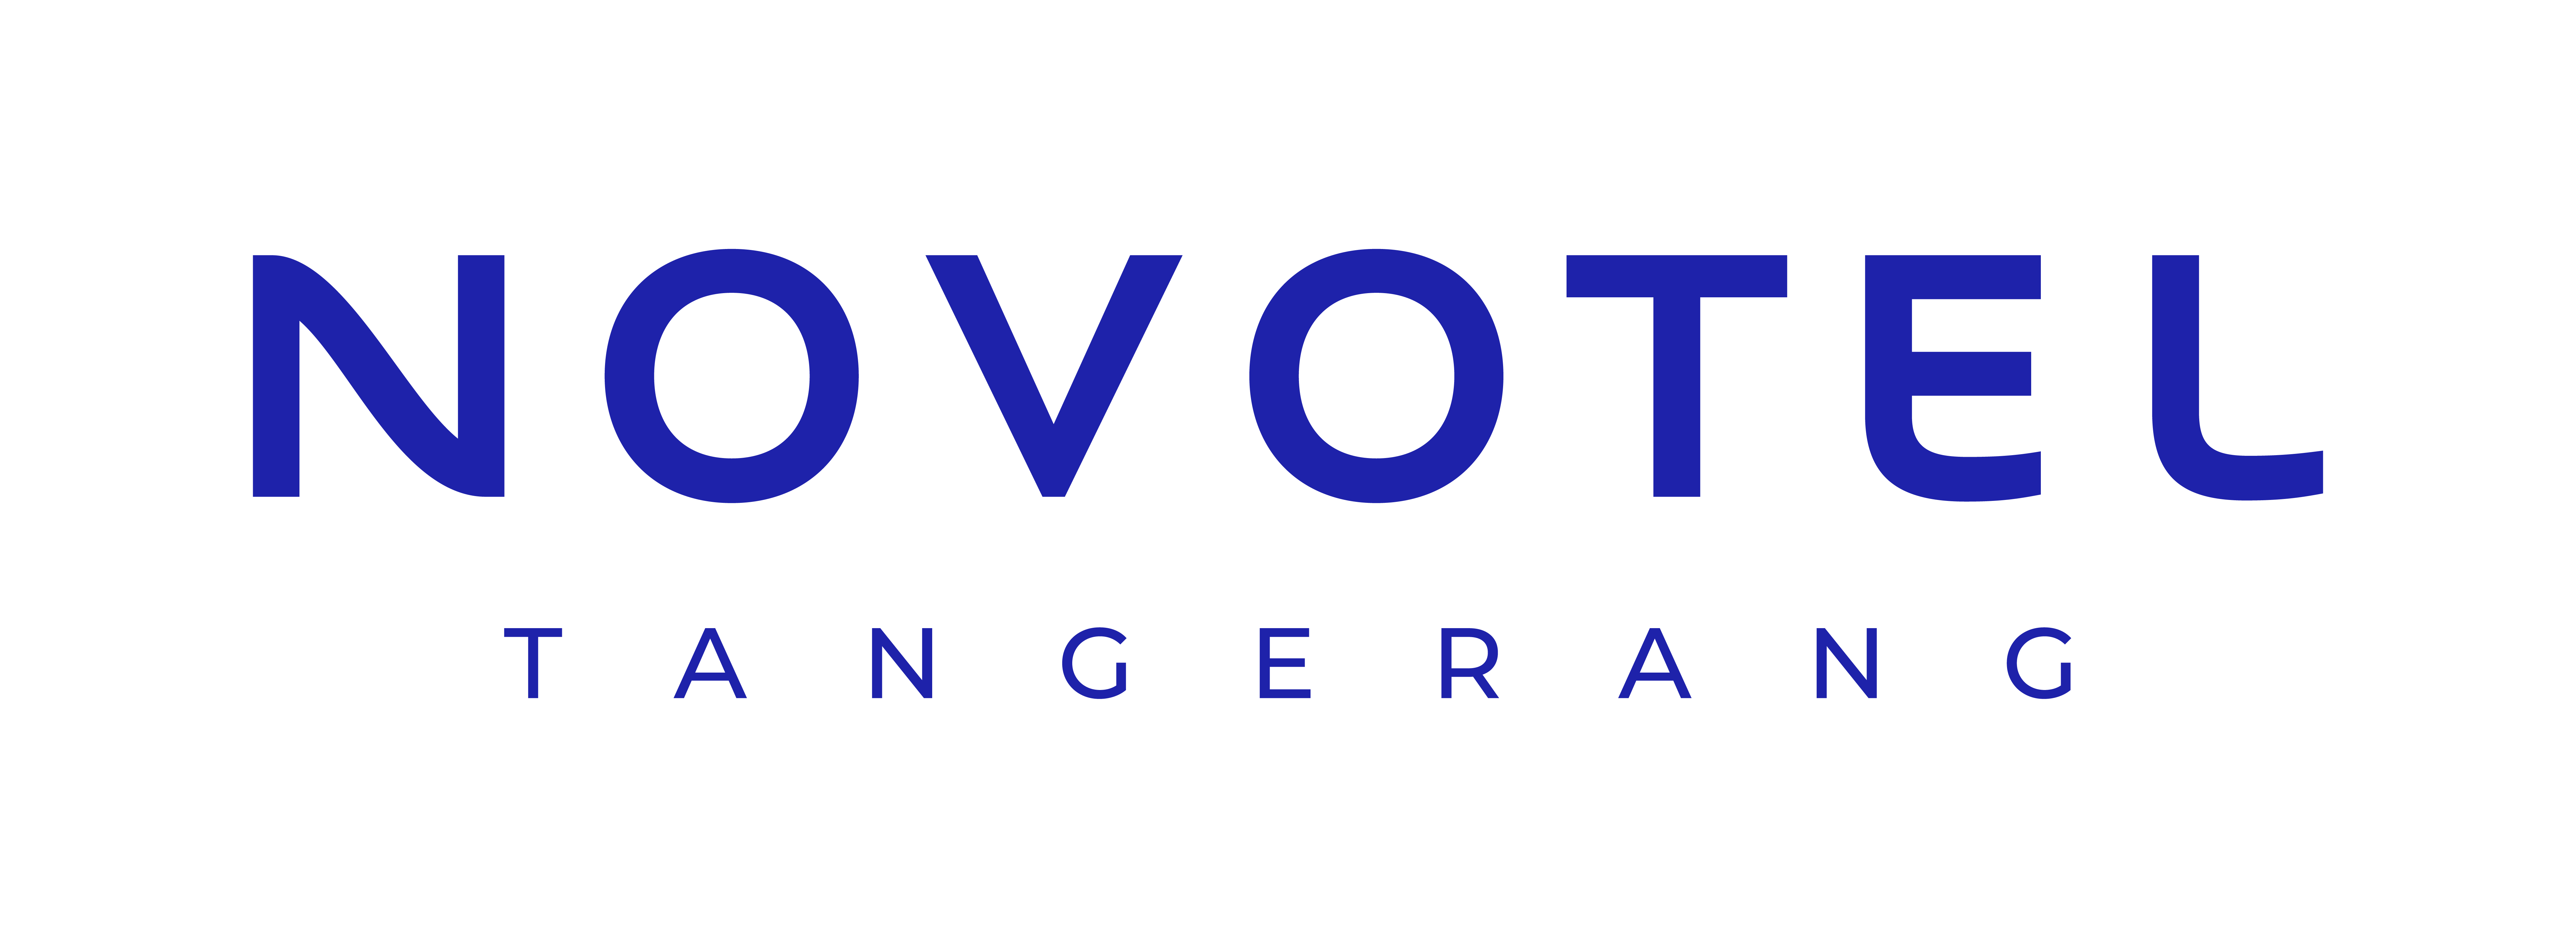 Logo Novotel alternatif